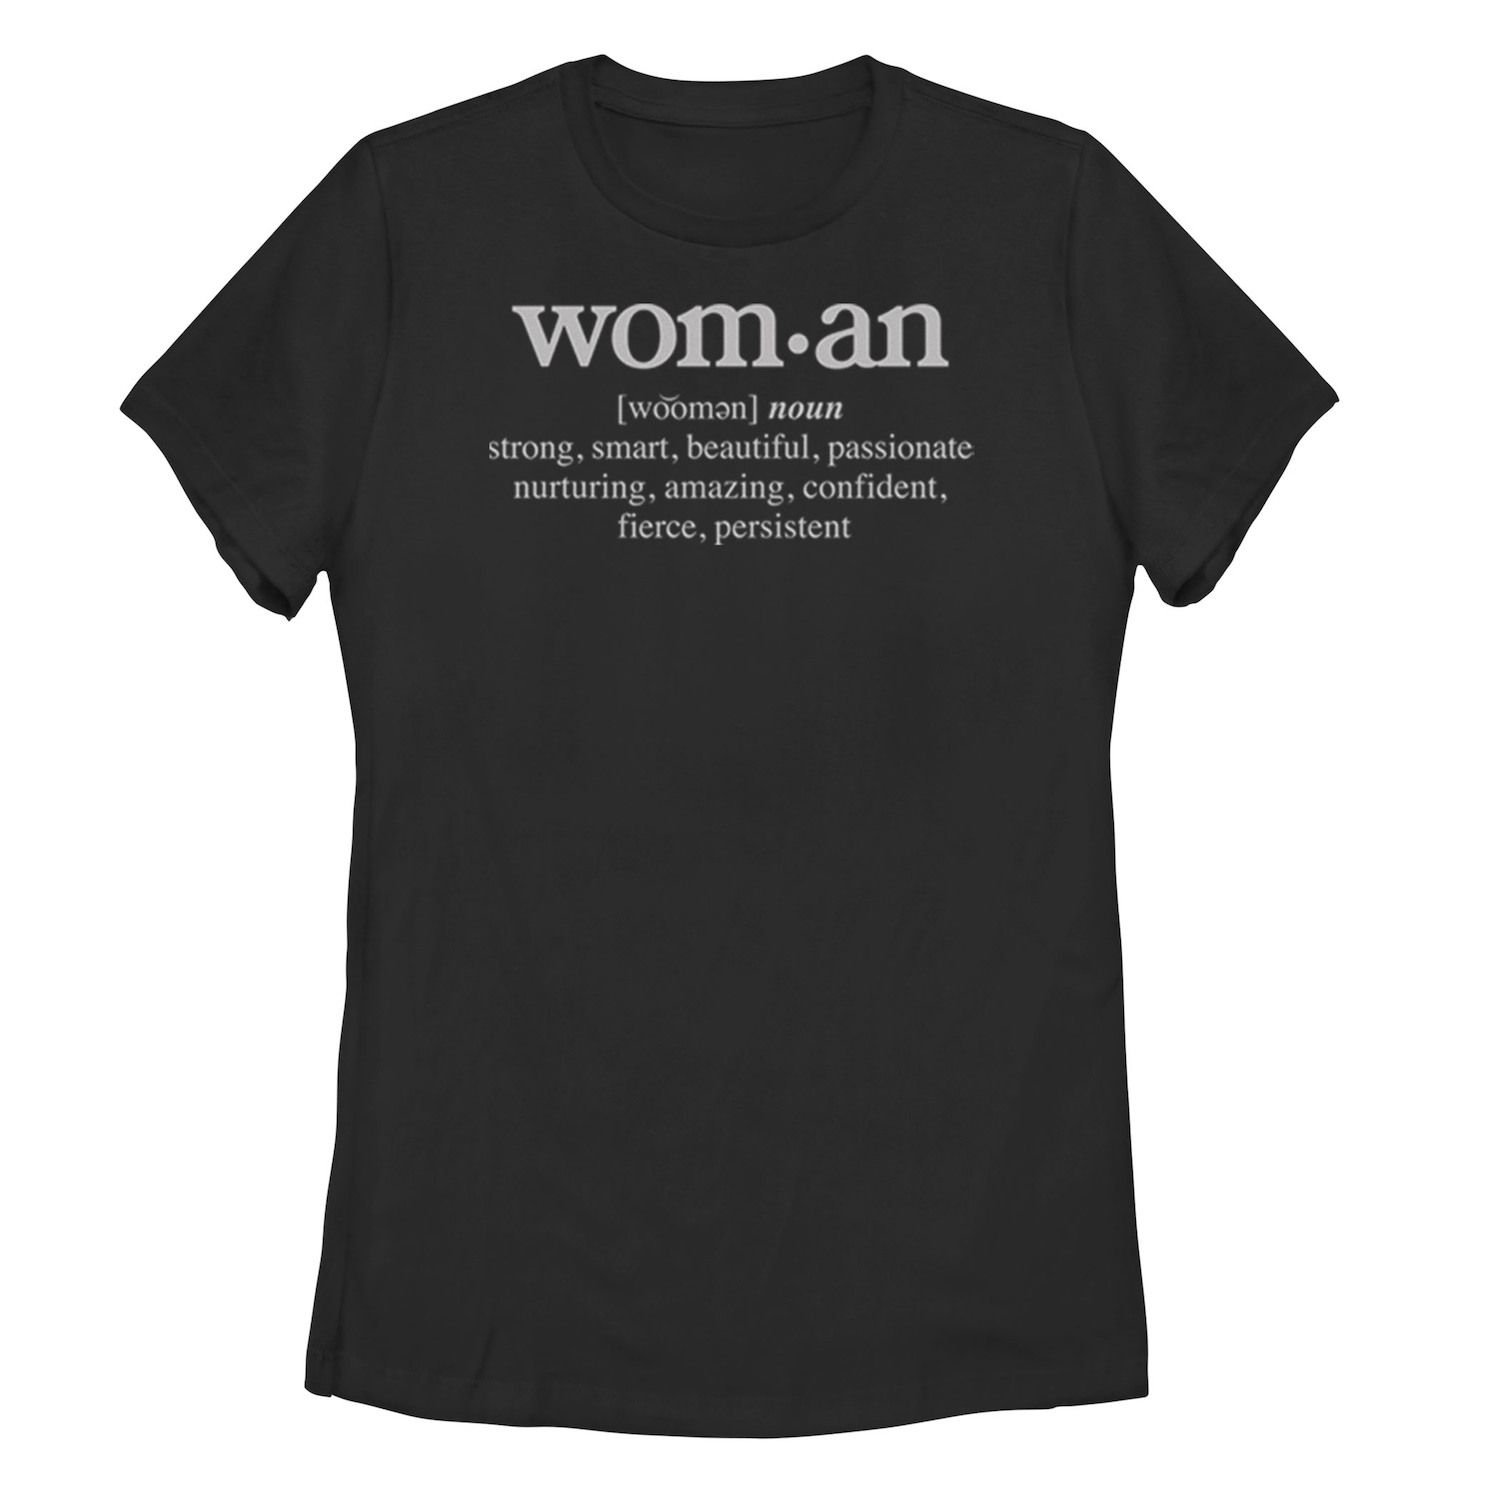 Женская футболка с графическим рисунком для юниоров